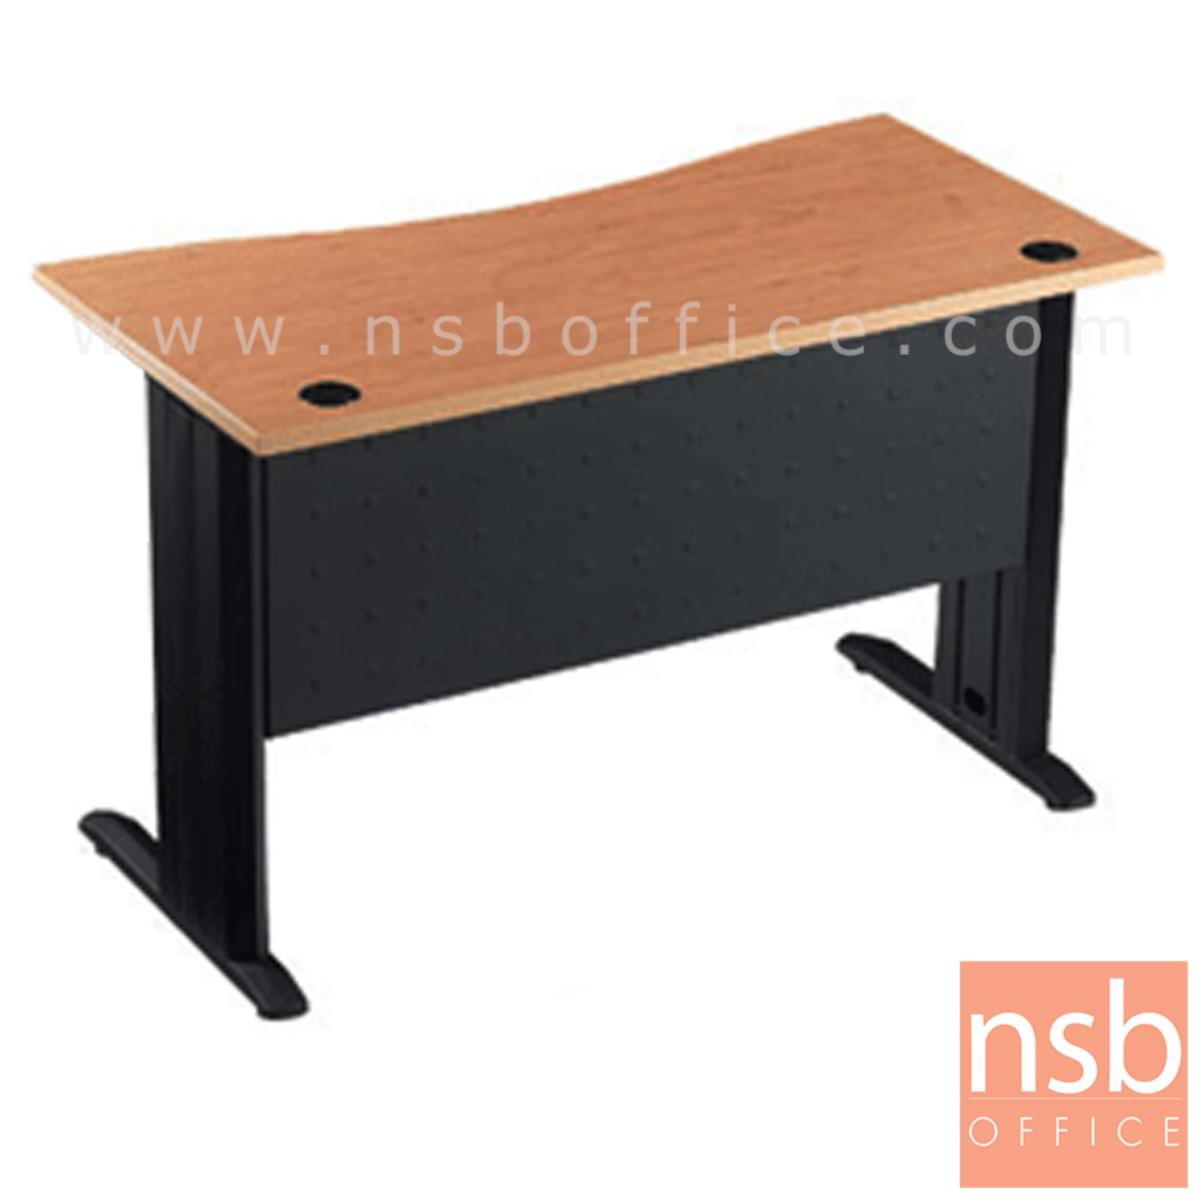 โต๊ะทำงานหน้าโค้งเว้า ขนาด 120W*75H cm. บังโป้เหล็ก รุ่น S-DK-0621  ขาเหล็กตัวแอลสีดำ